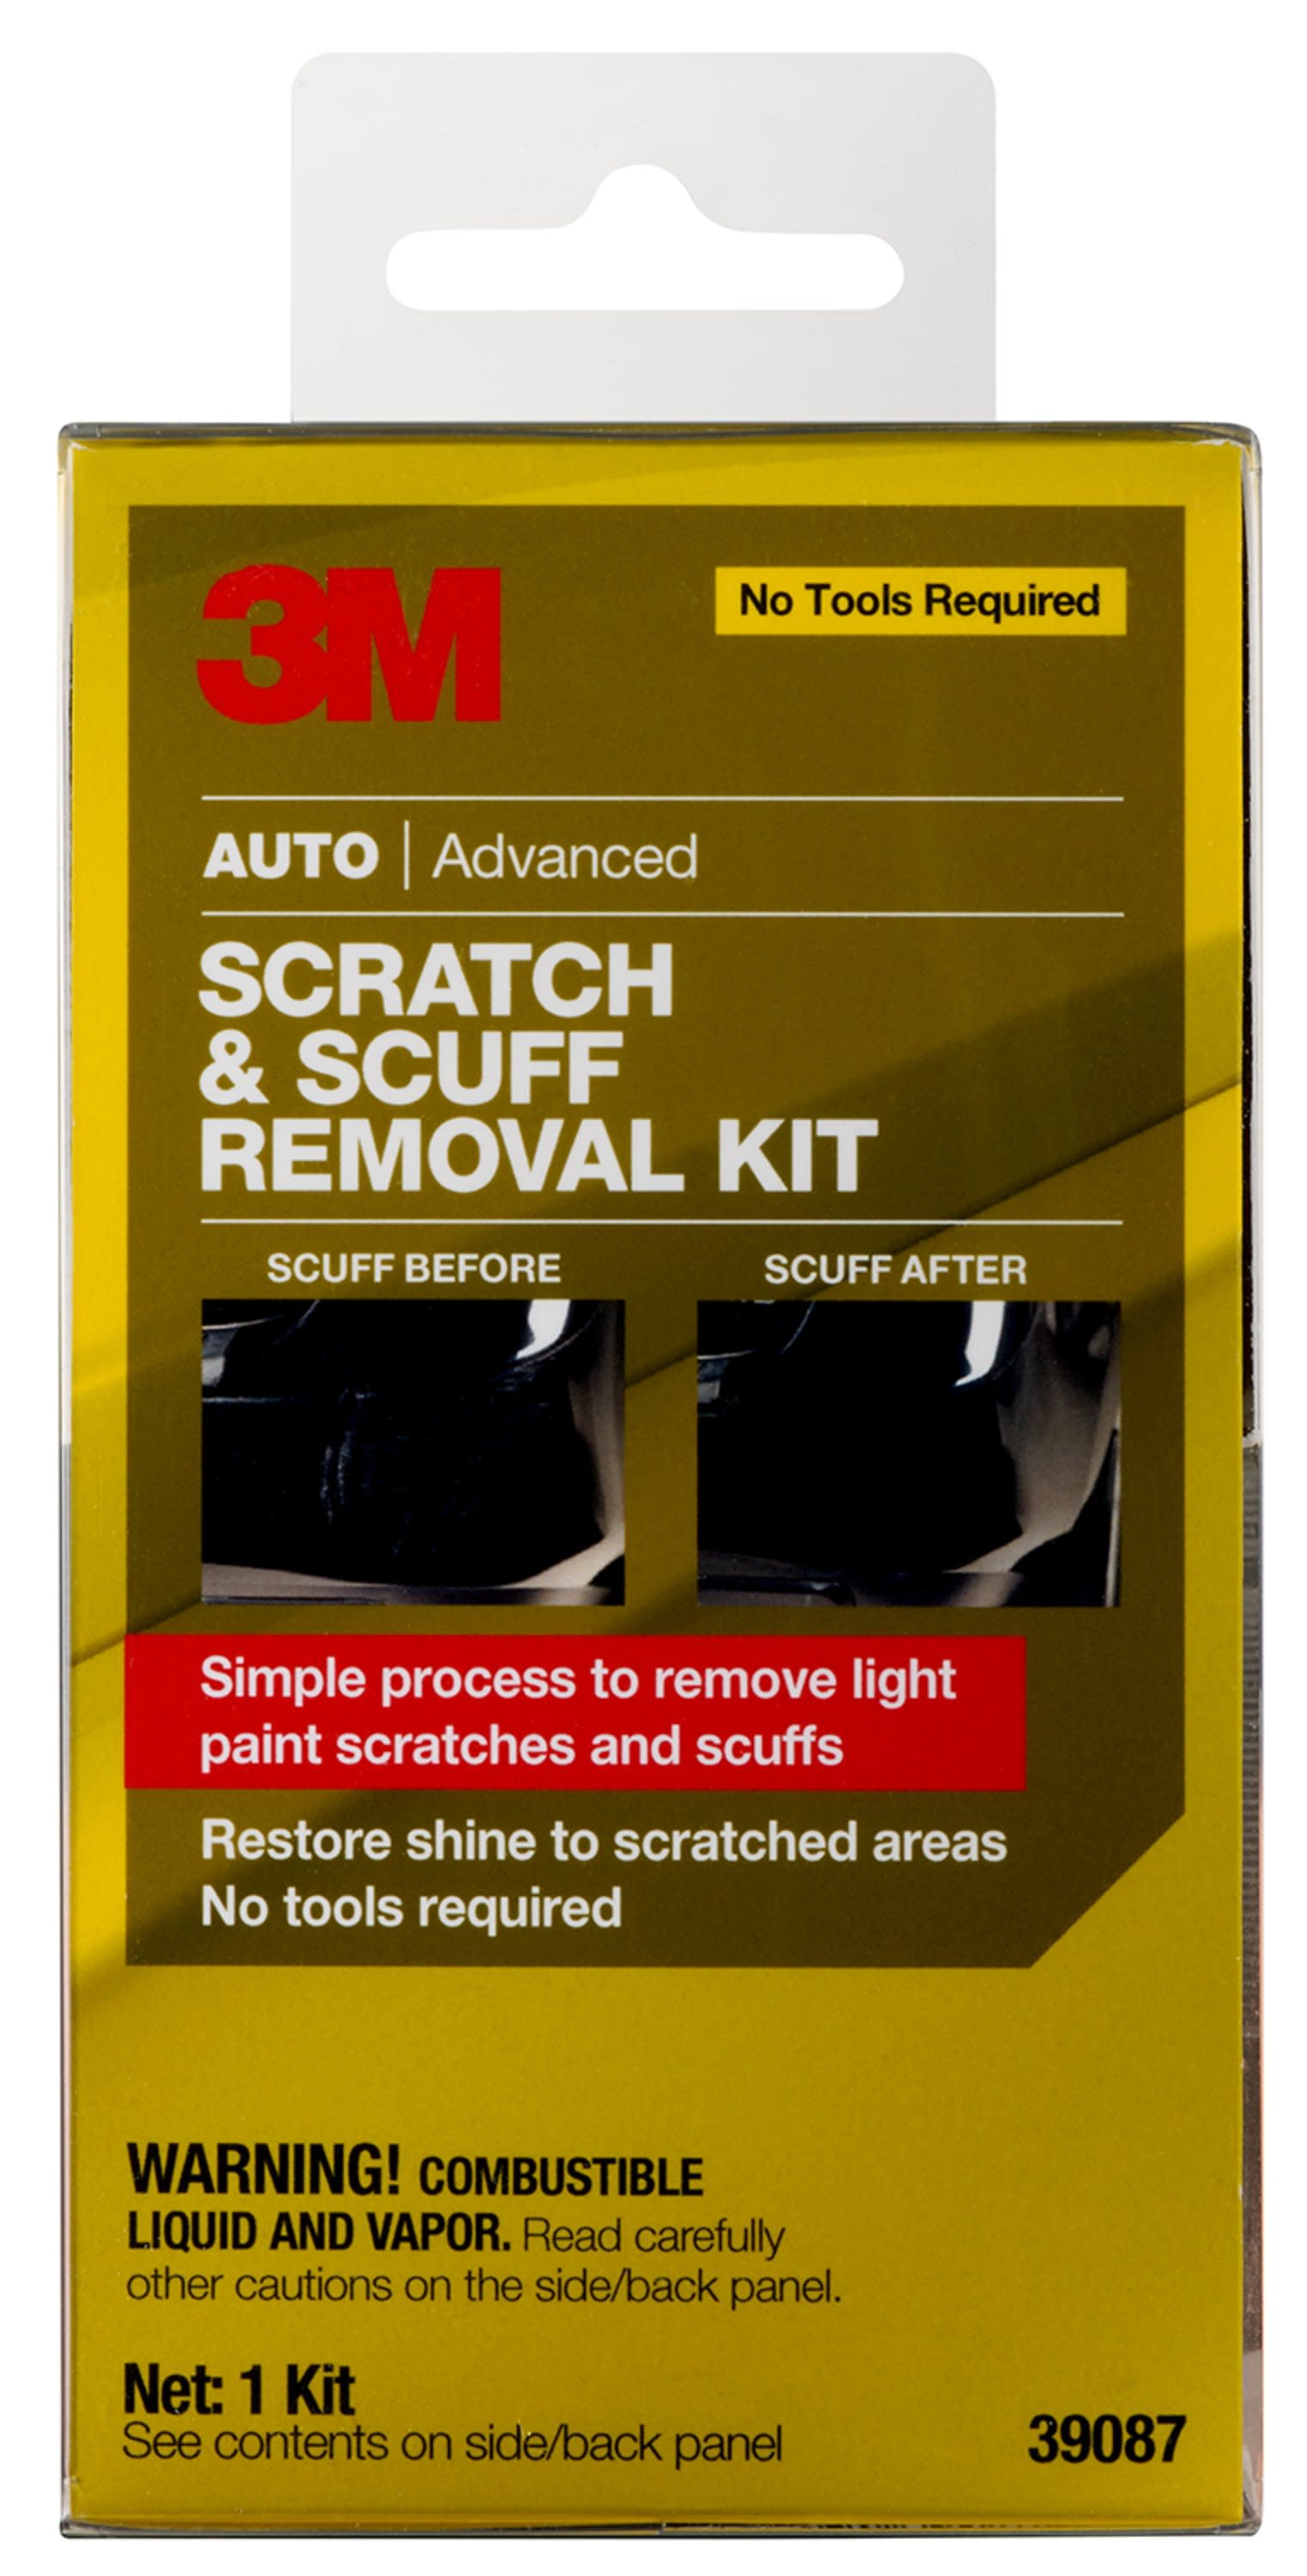 3M Auto Advanced Scratch and Scuff Removal Kit pc Box